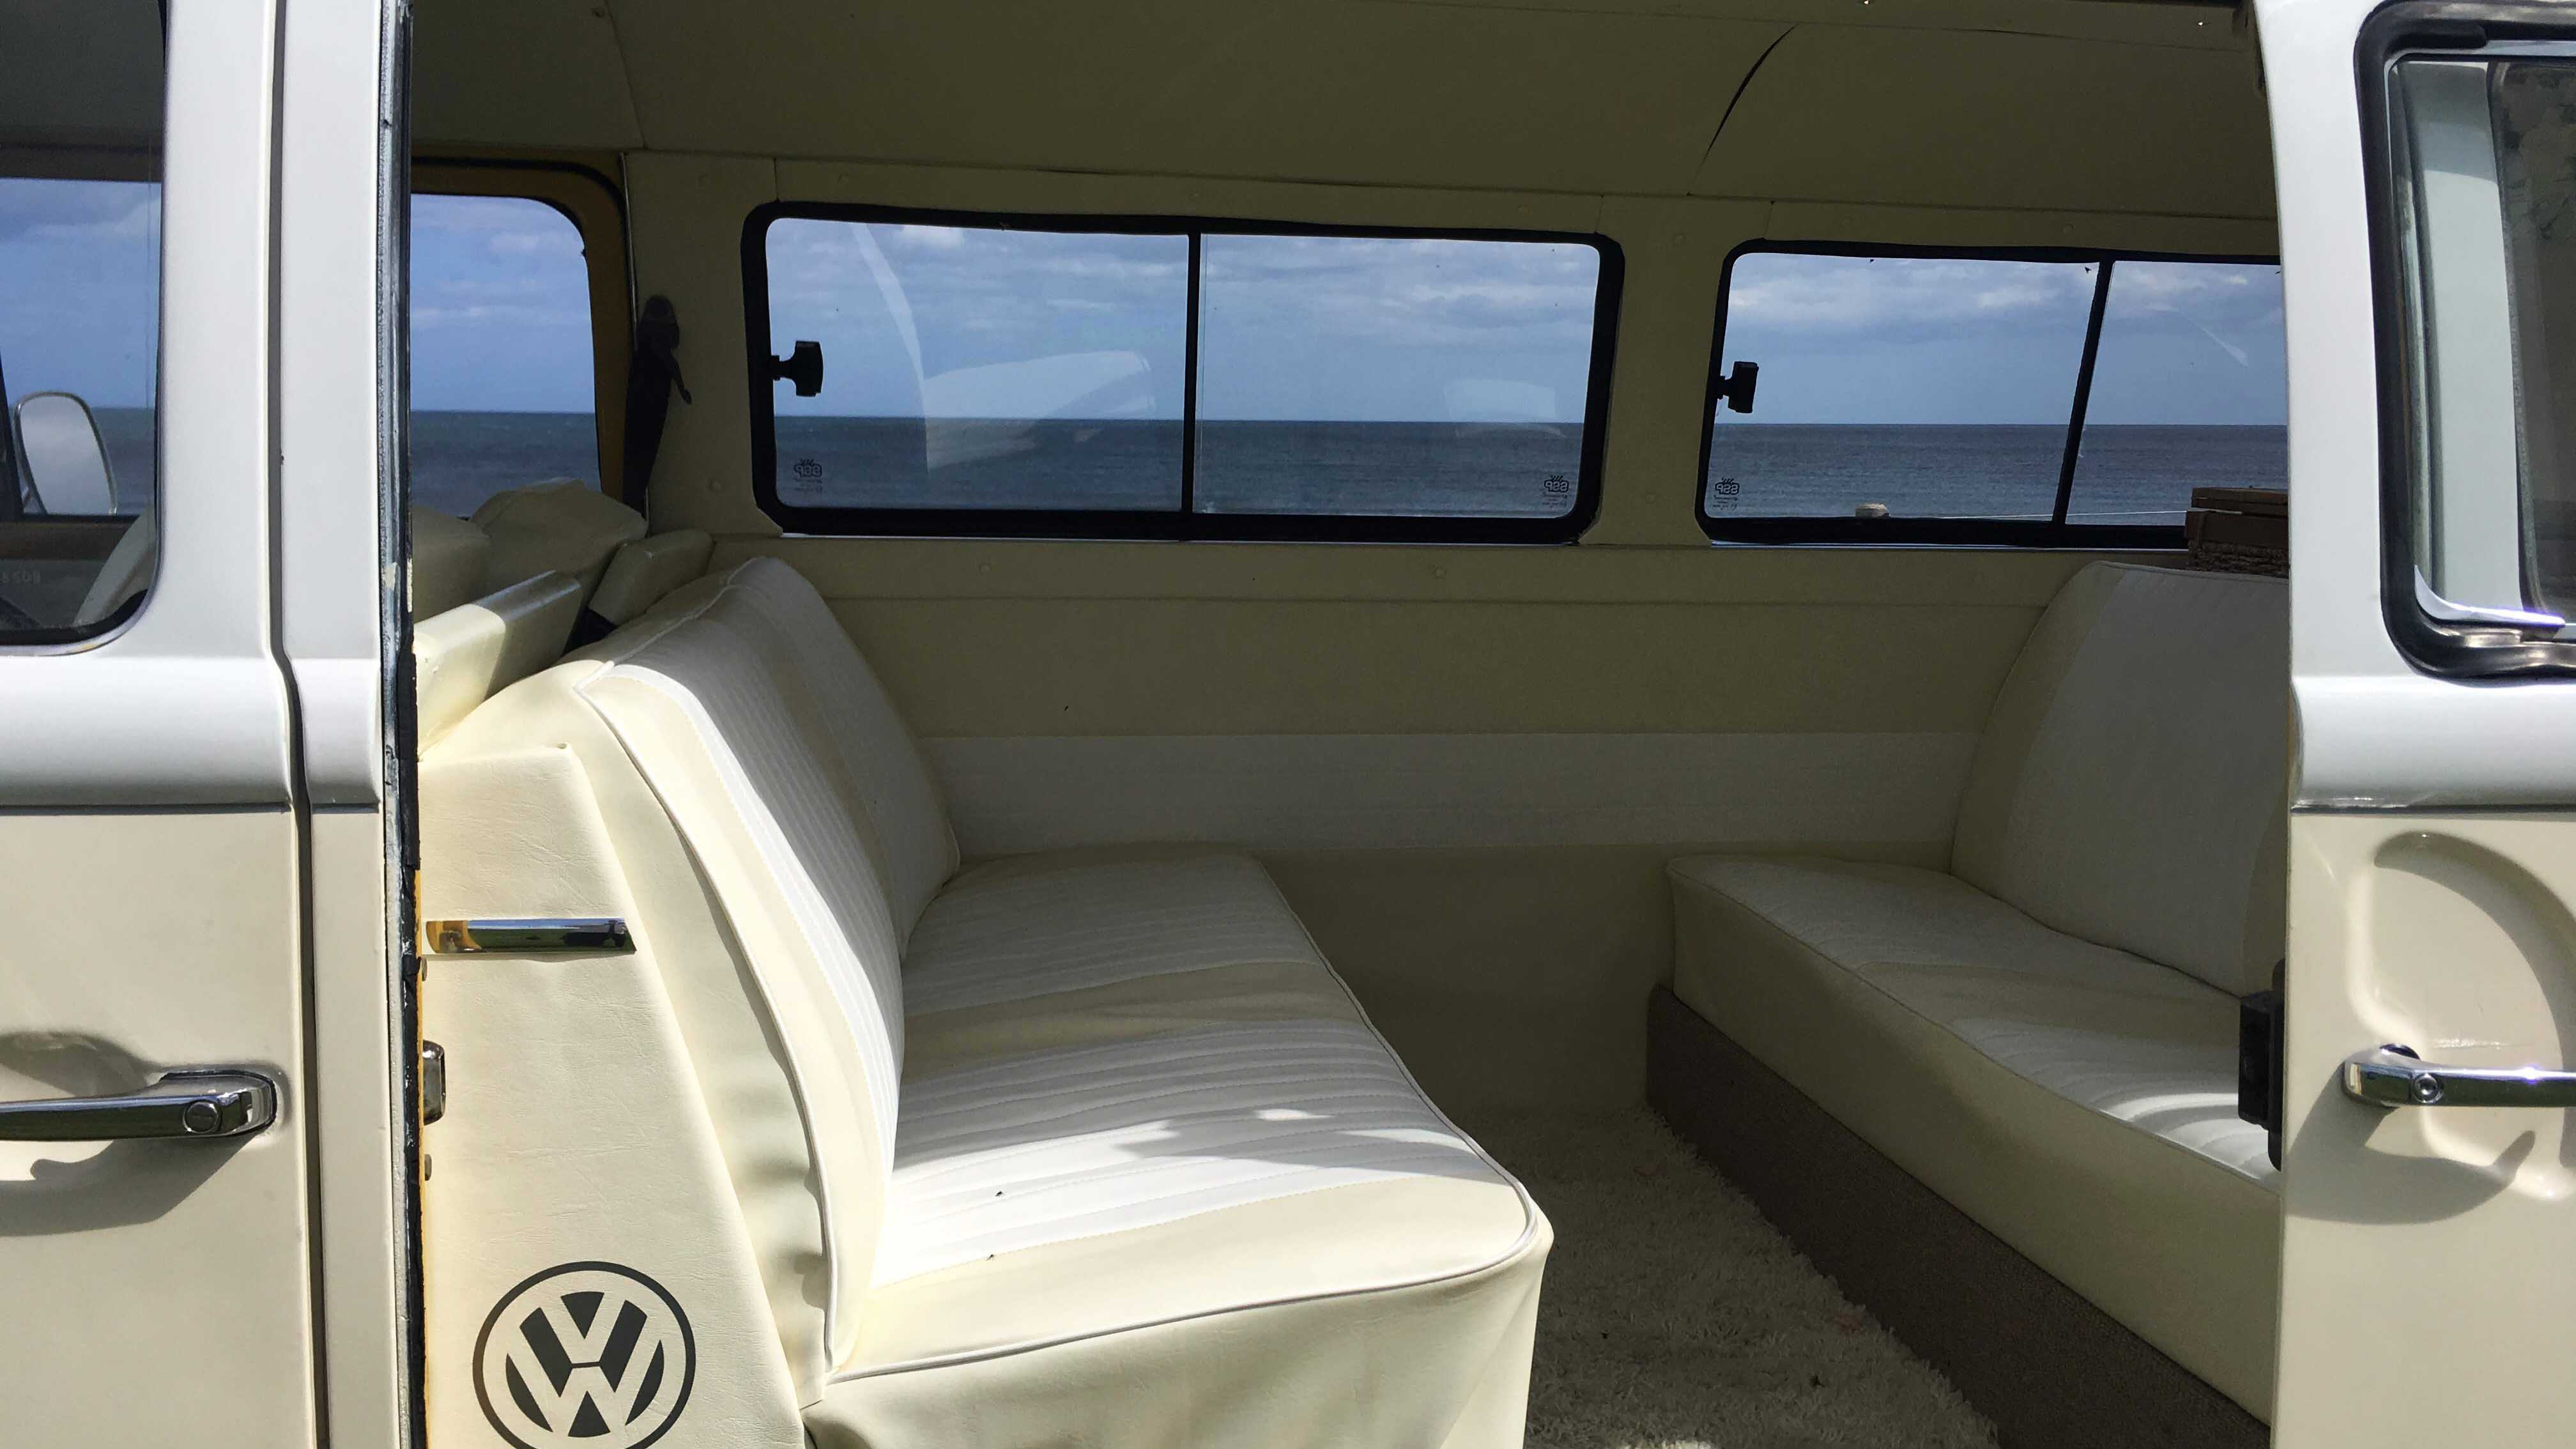 Volkswagen Bay Window Campervan